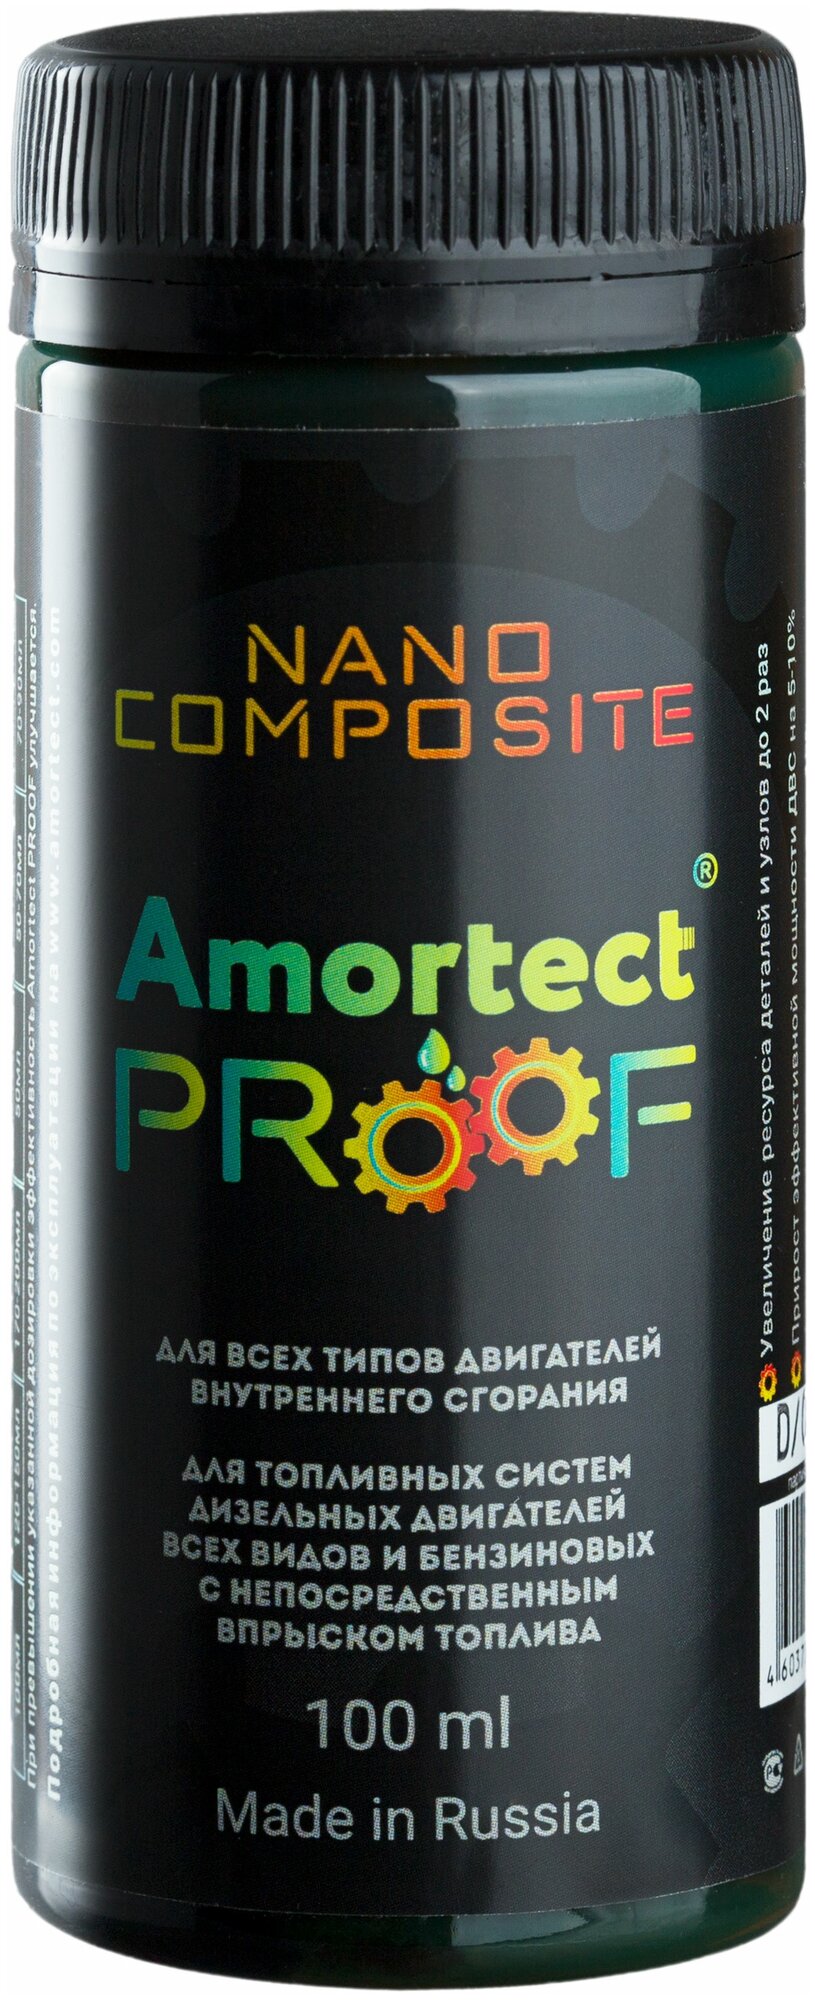 Смазочный нанокомпозит Amortect PROOF (Амортект пруф). Присадка (добавка) в моторное масло и топливную систему.